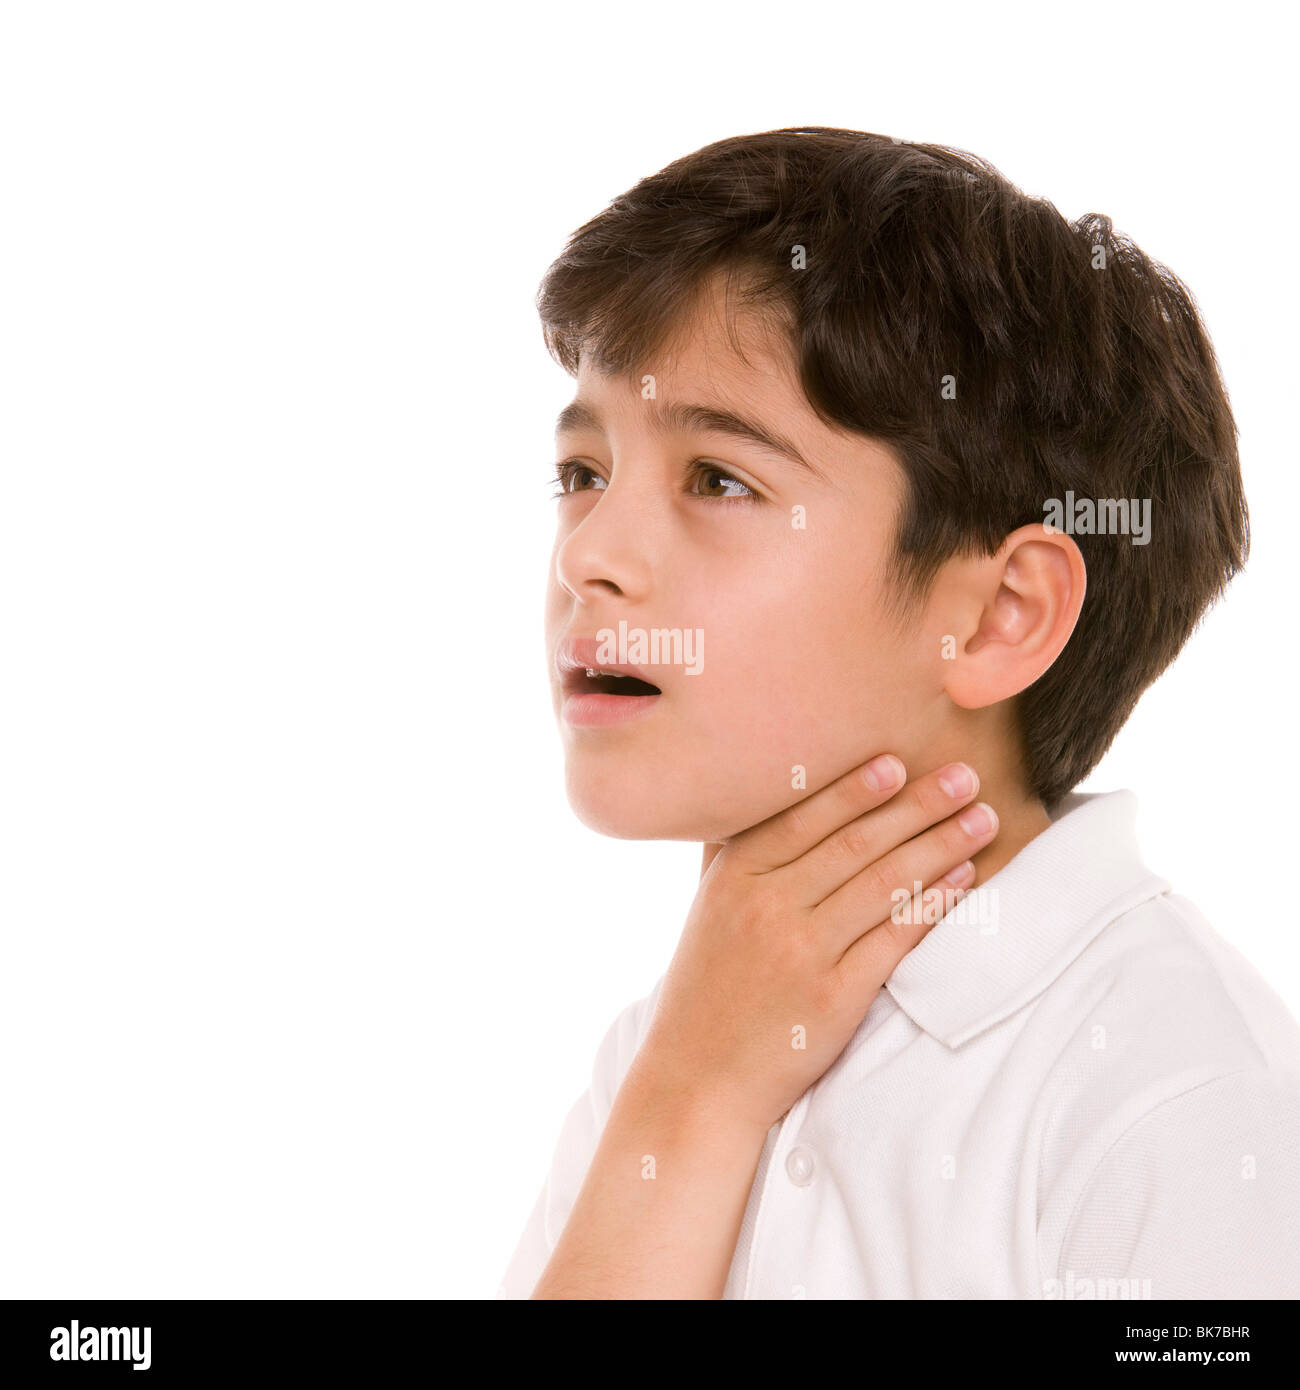 El niño con dolor de garganta Foto de stock